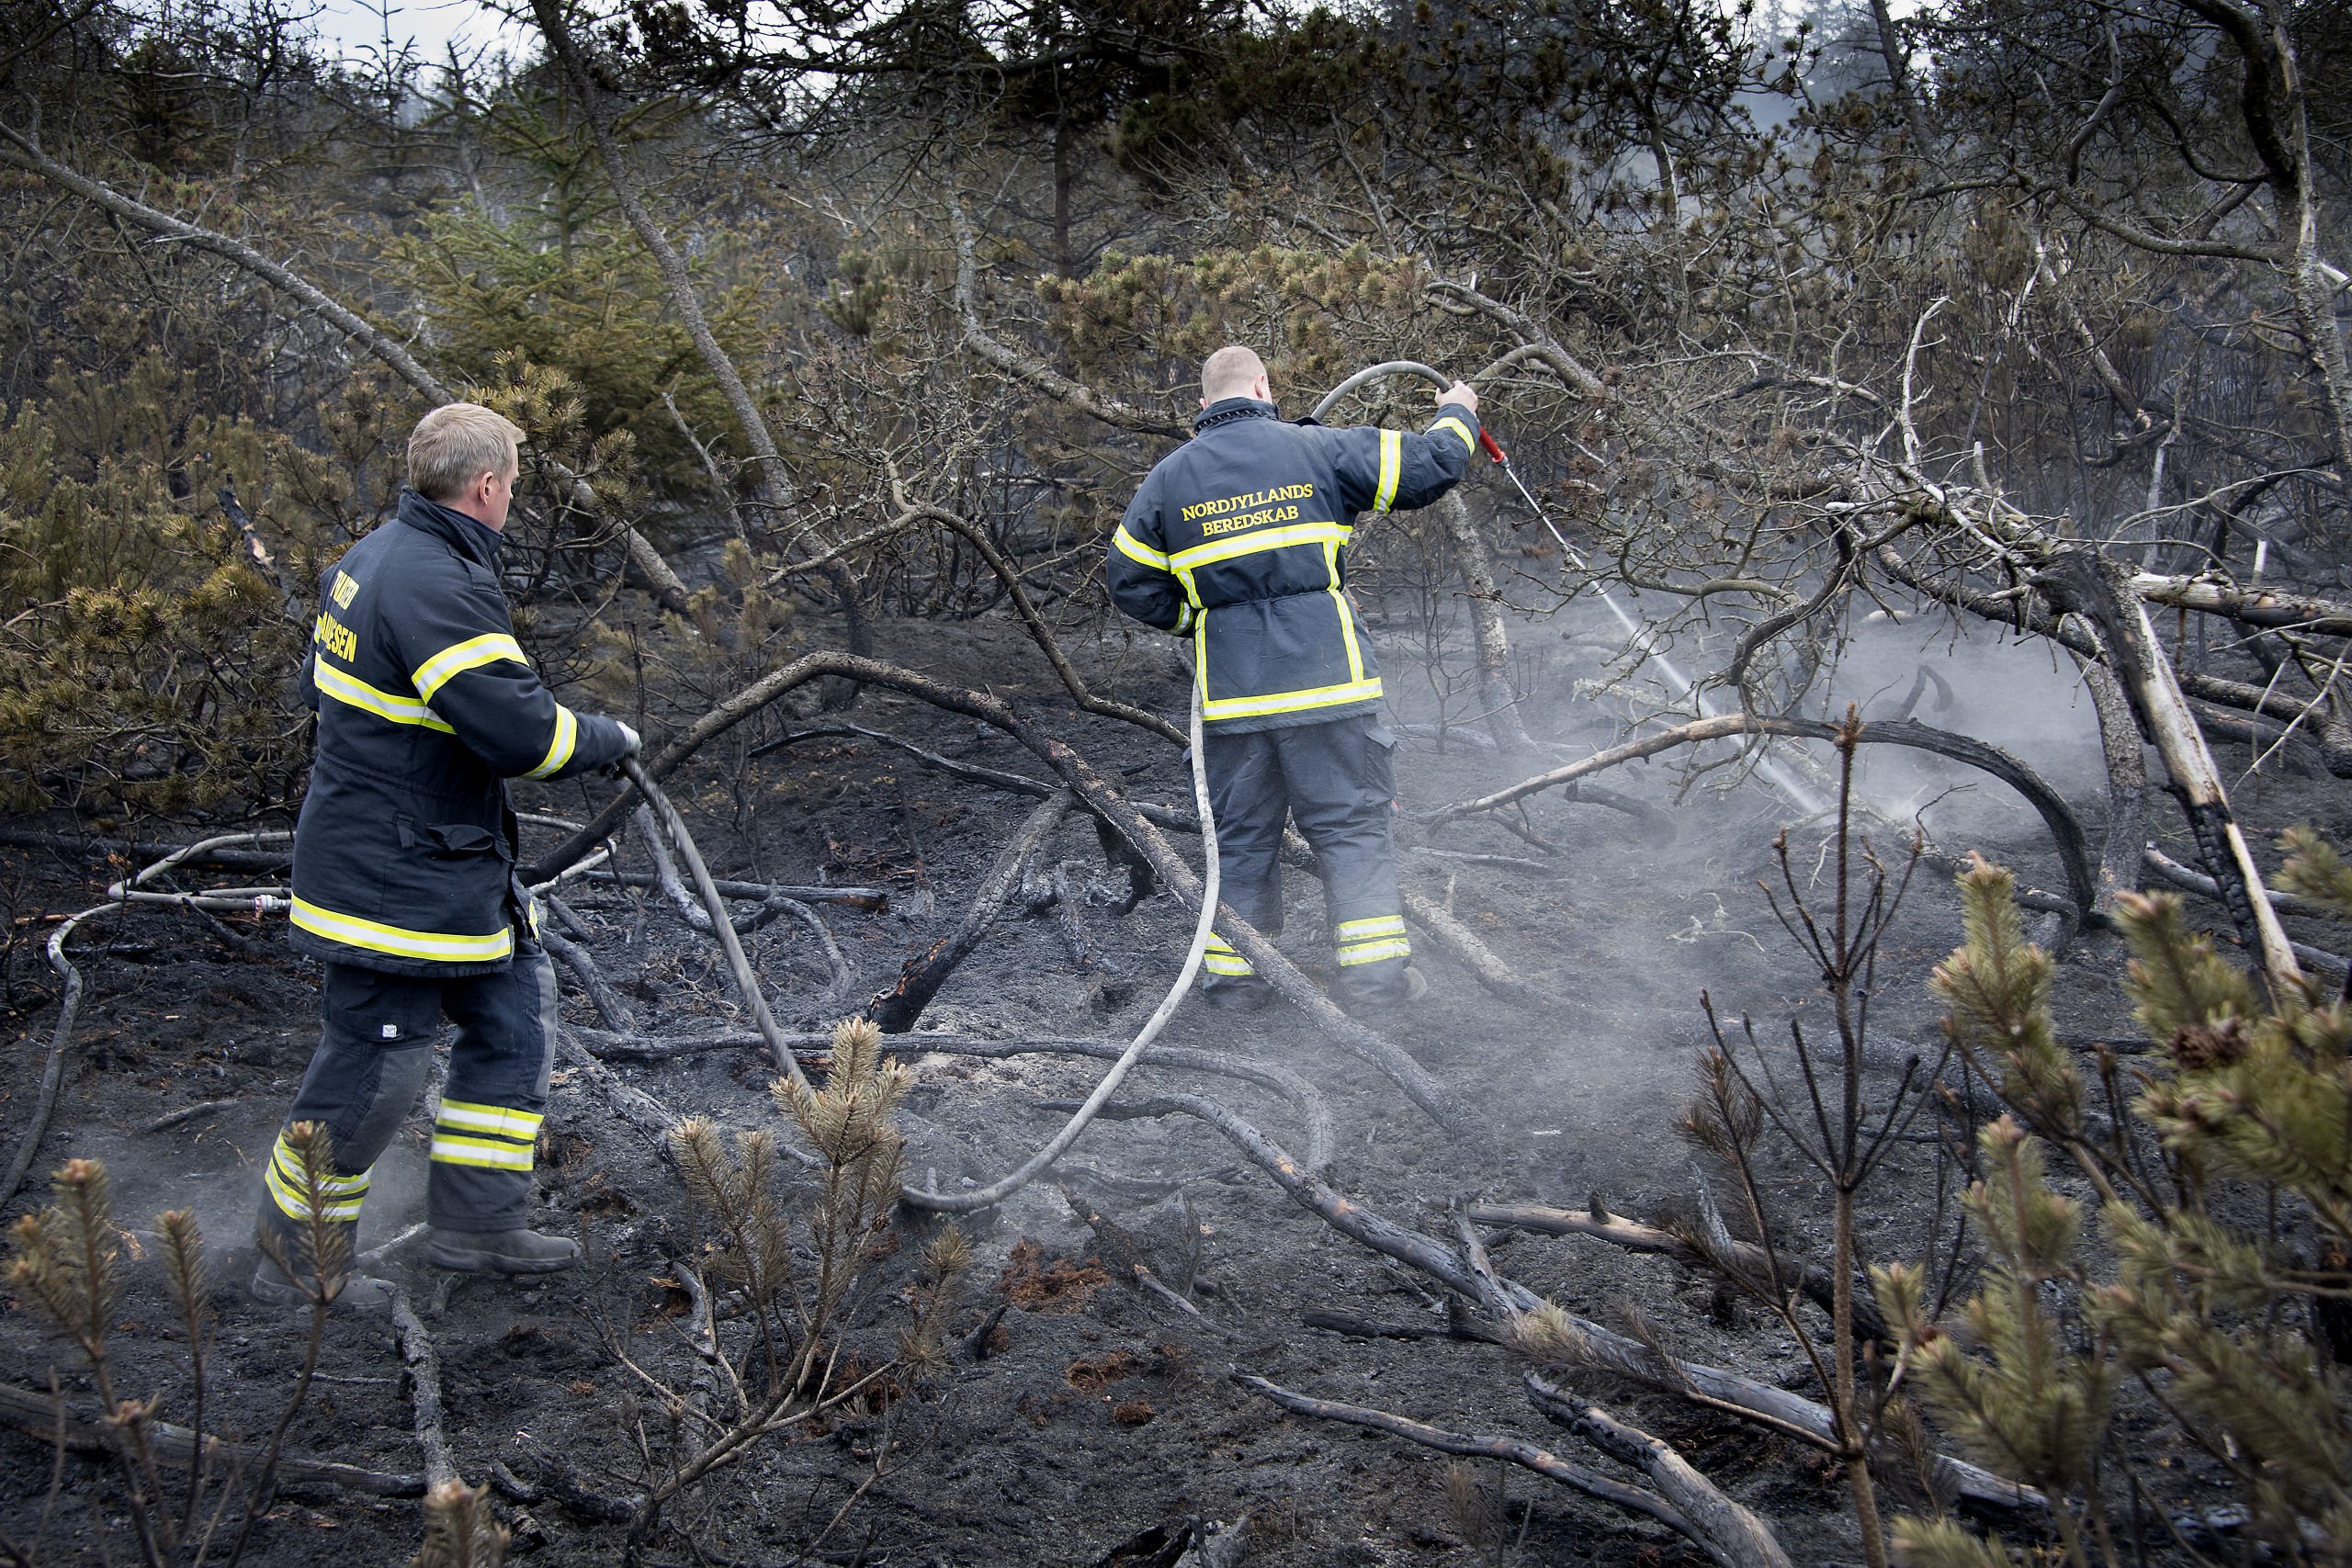 Der slukkes stadig ild i Thy - stor naturbrand blussede op igen